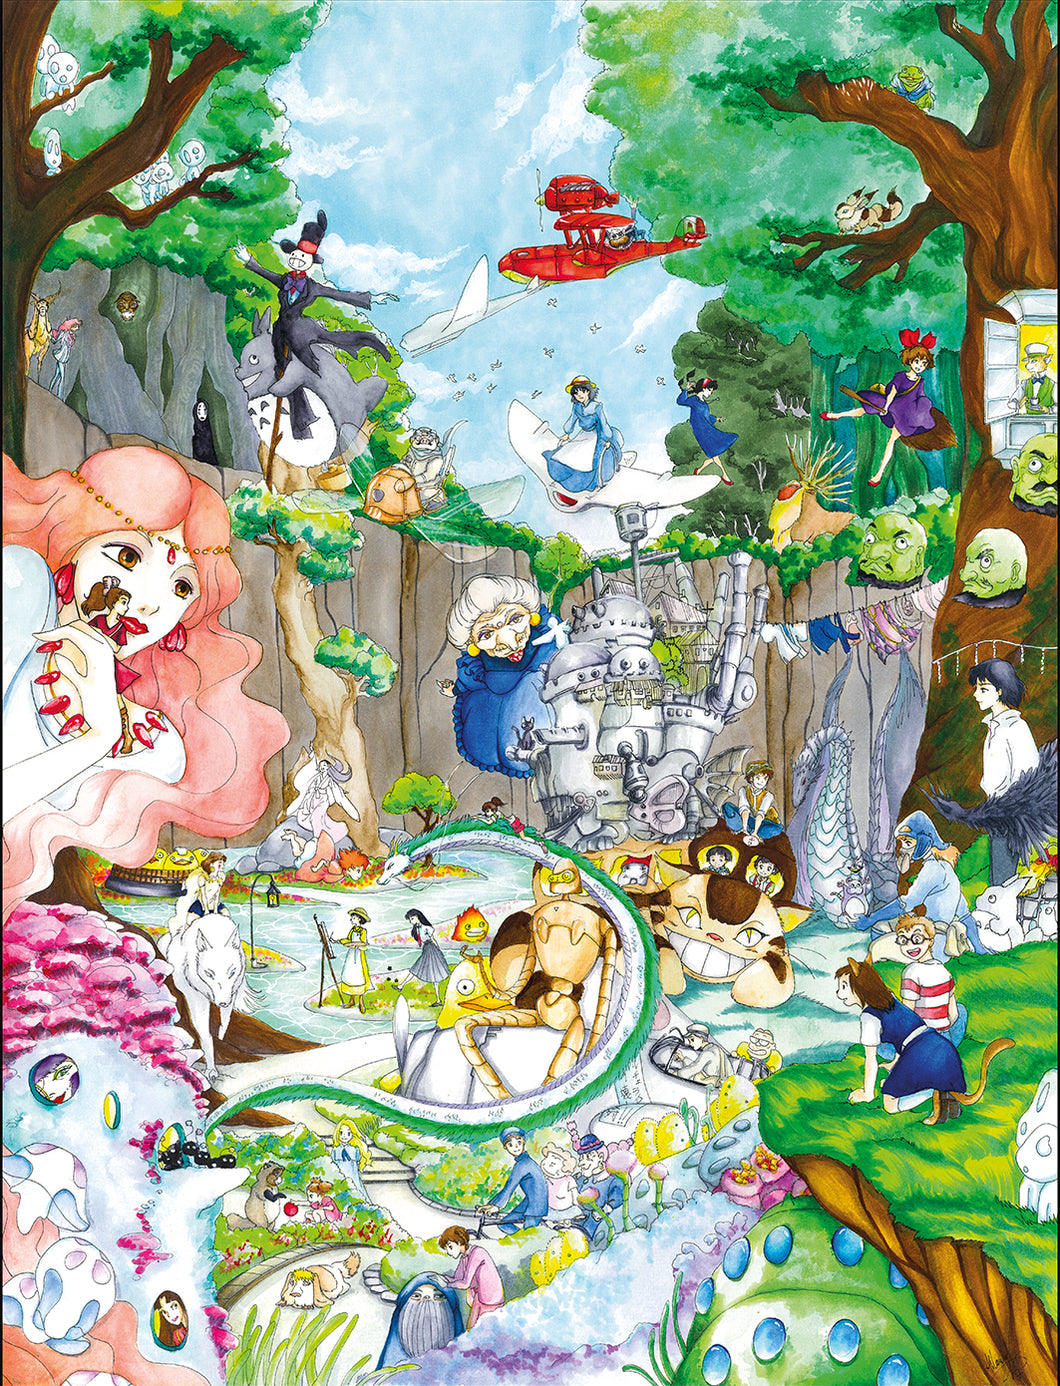 Studios Ghibli poster by Kudnalla